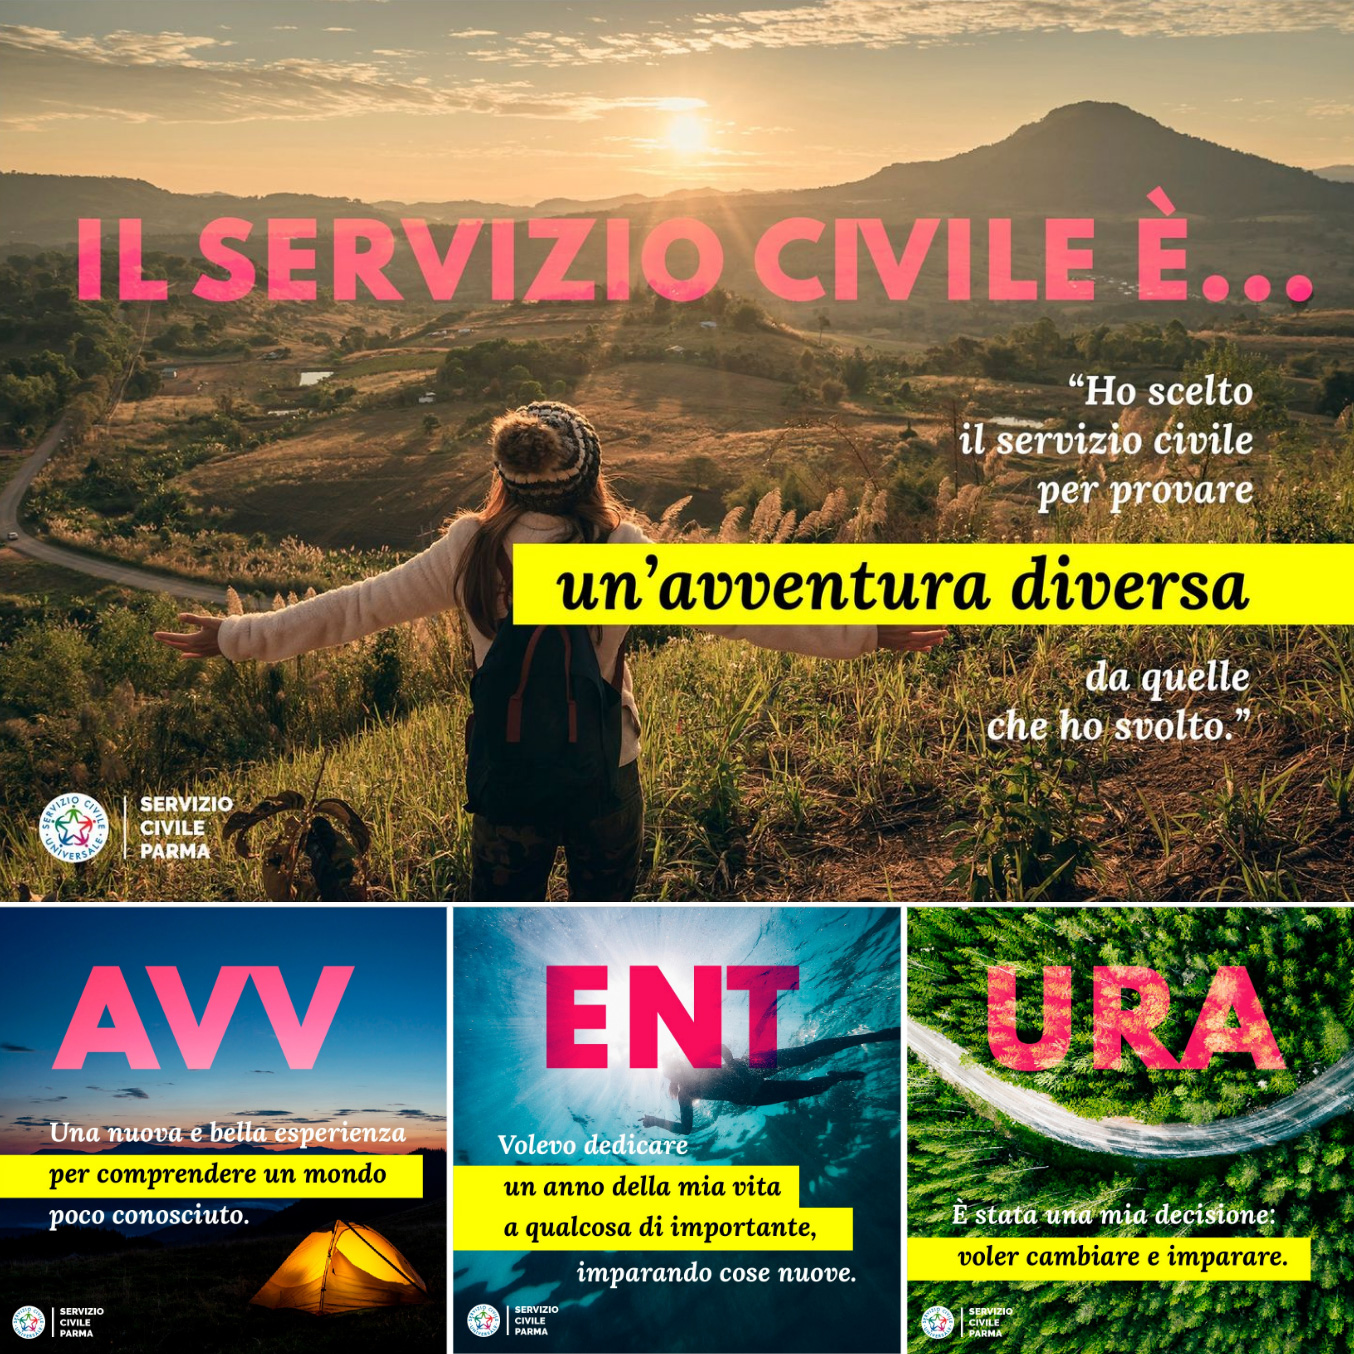 https://www.serviziocivileparma.it/web/il-servizio-civile-e-avventura/